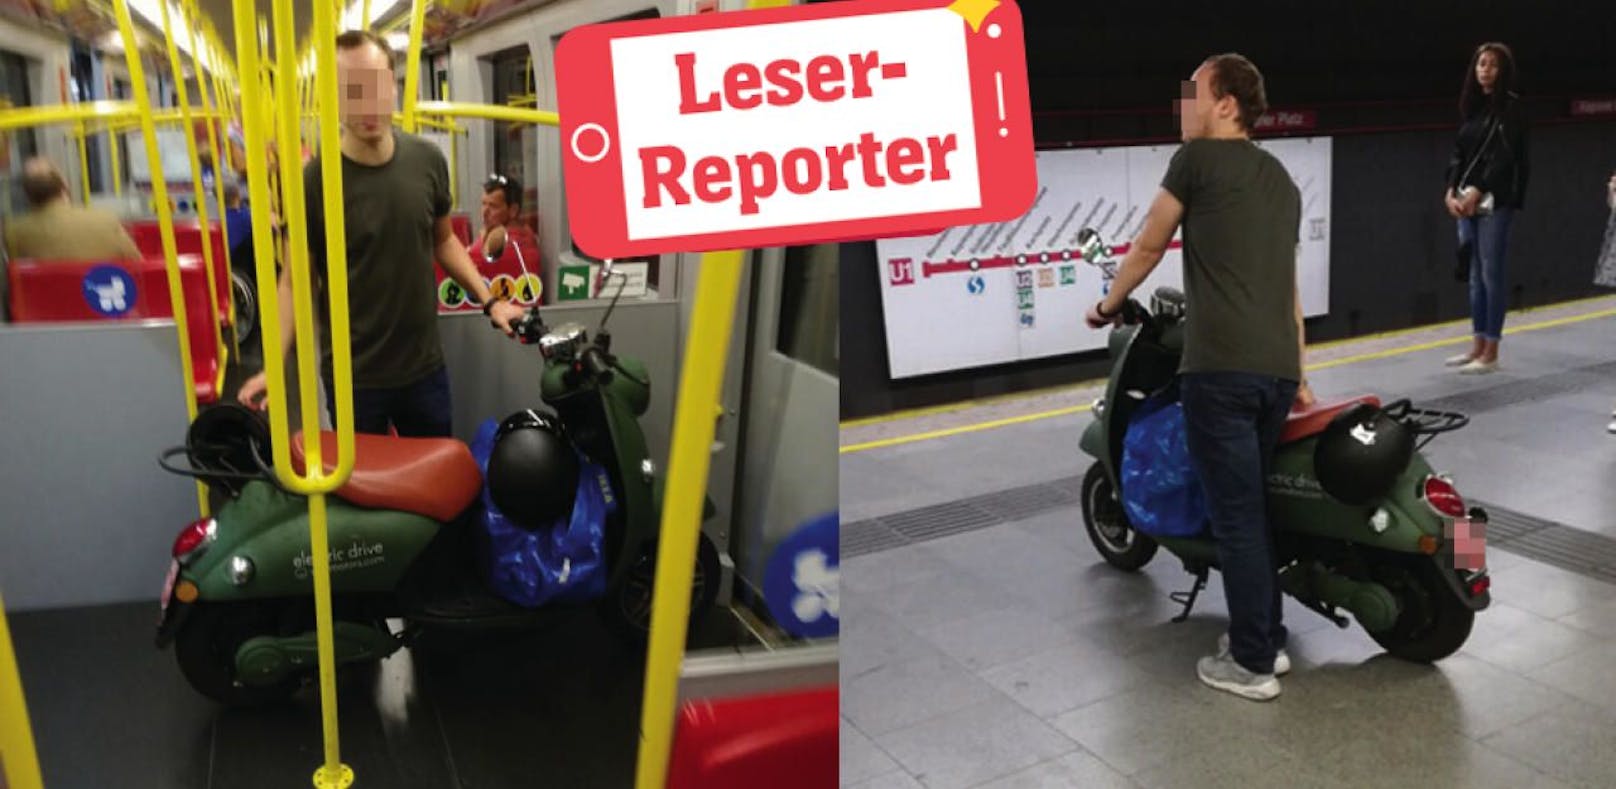 Sieht man auch nicht jeden Tag: Mit dem Moped in der U-Bahn!